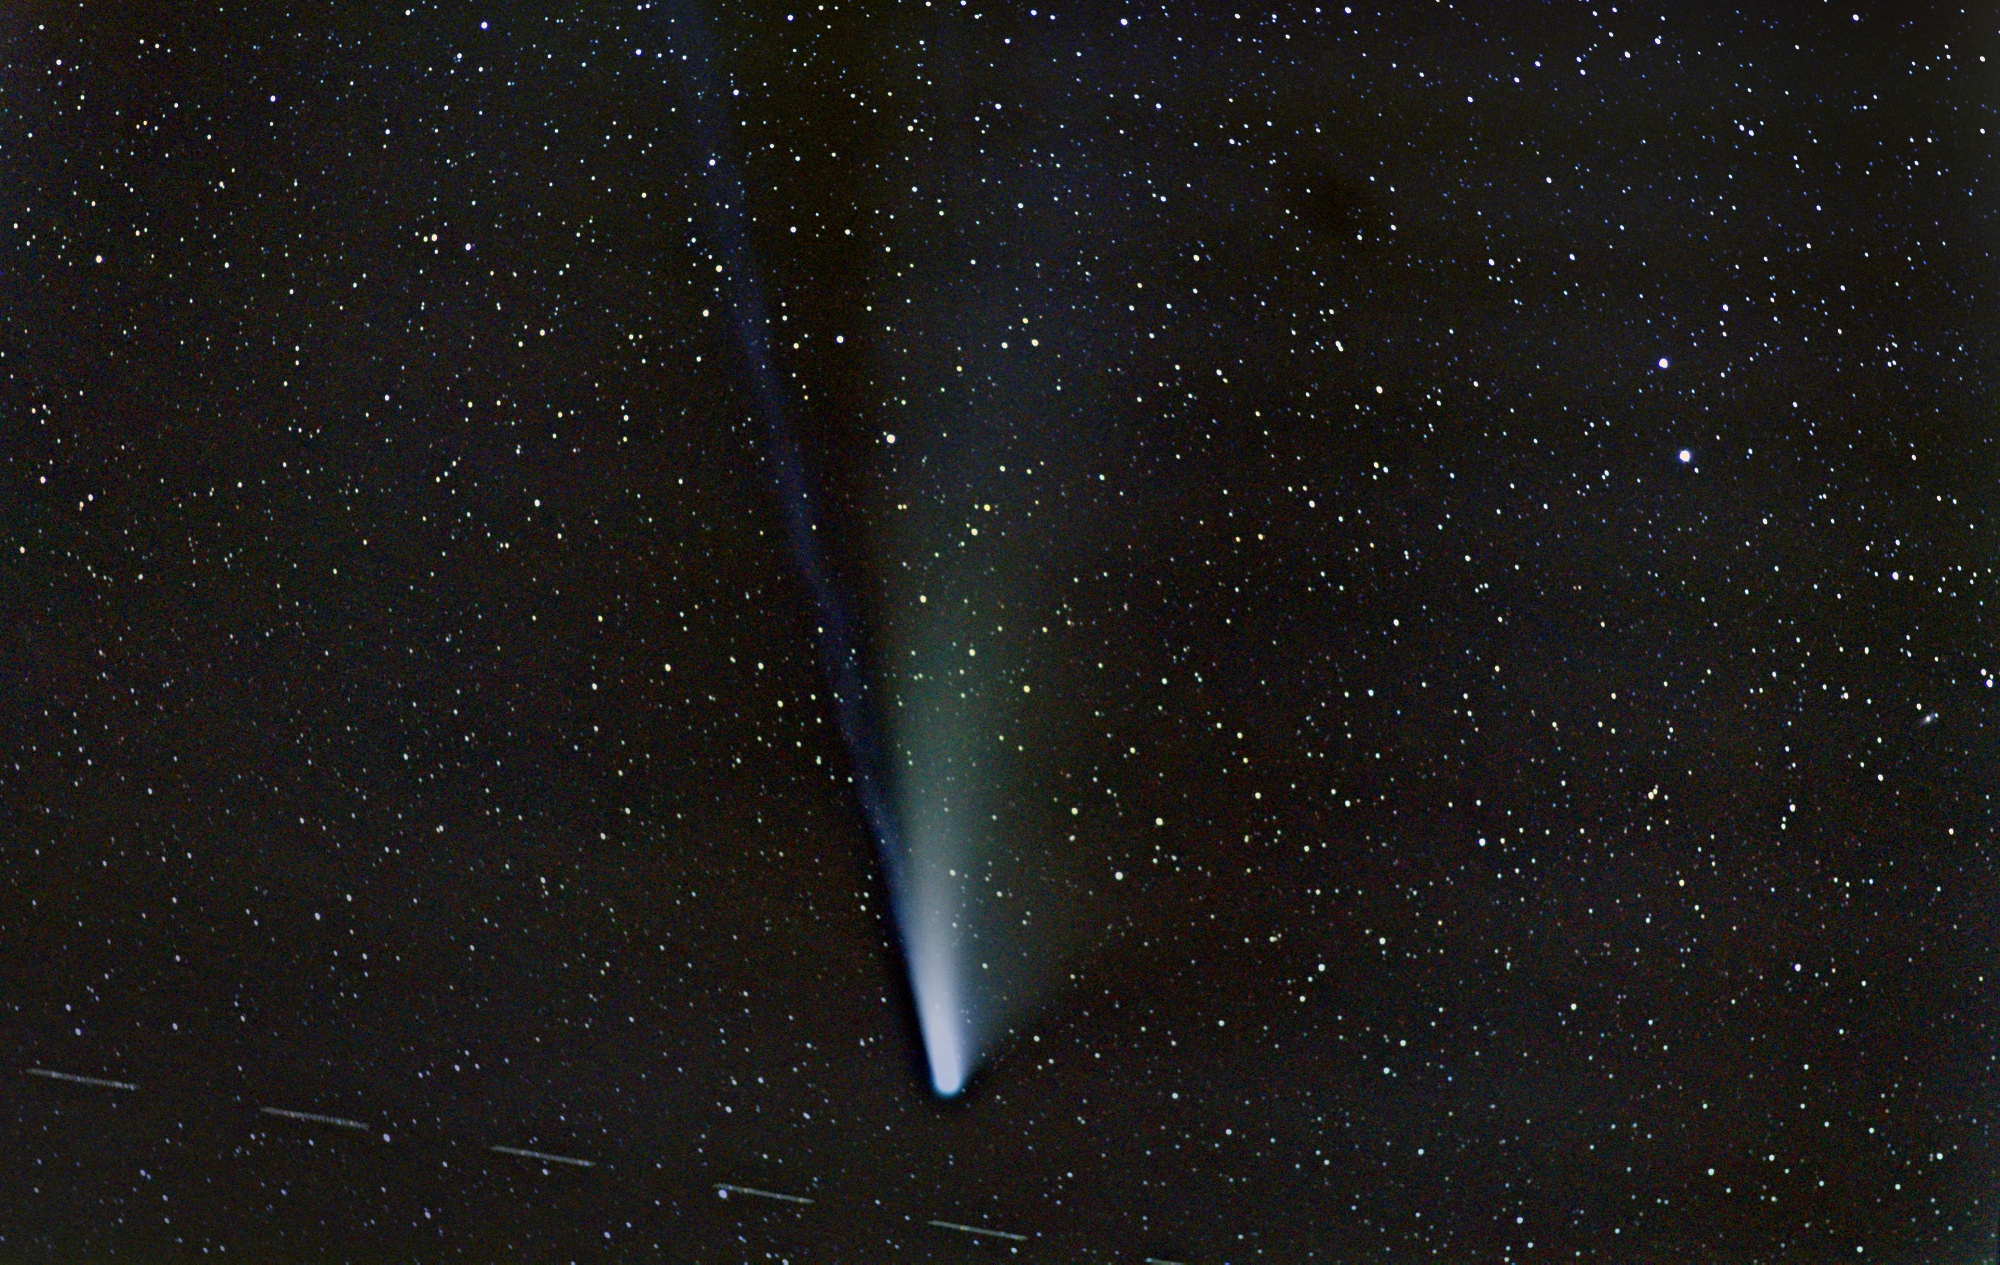 comete3psp.jpg.a3636a155a7fc47bc1278f3d8b4d44ae.jpg